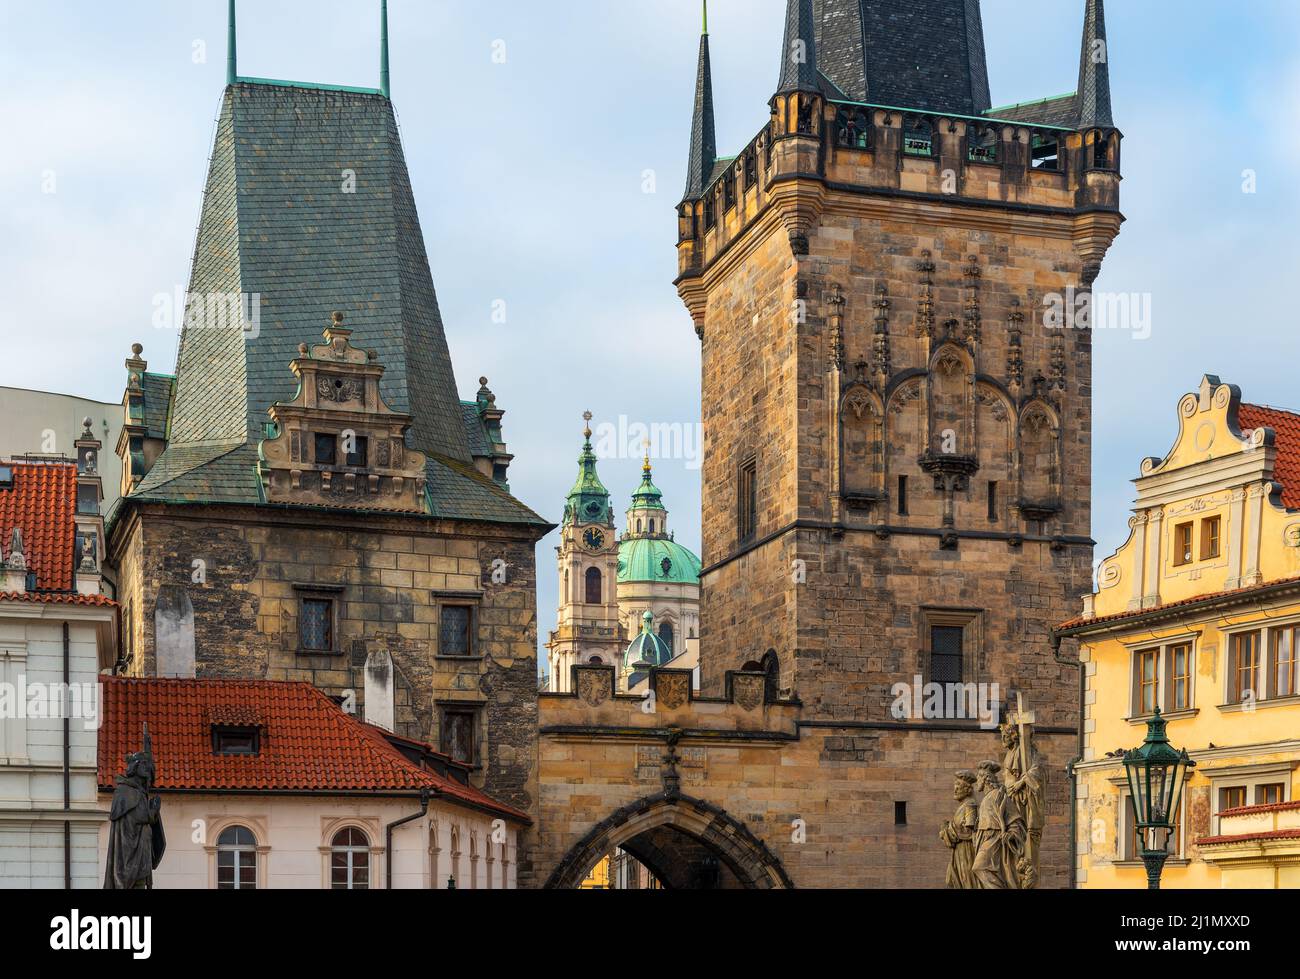 Architecture traditionnelle de tours, façades et dômes au lever du soleil, Pont Charles, Prague, République Tchèque. Banque D'Images